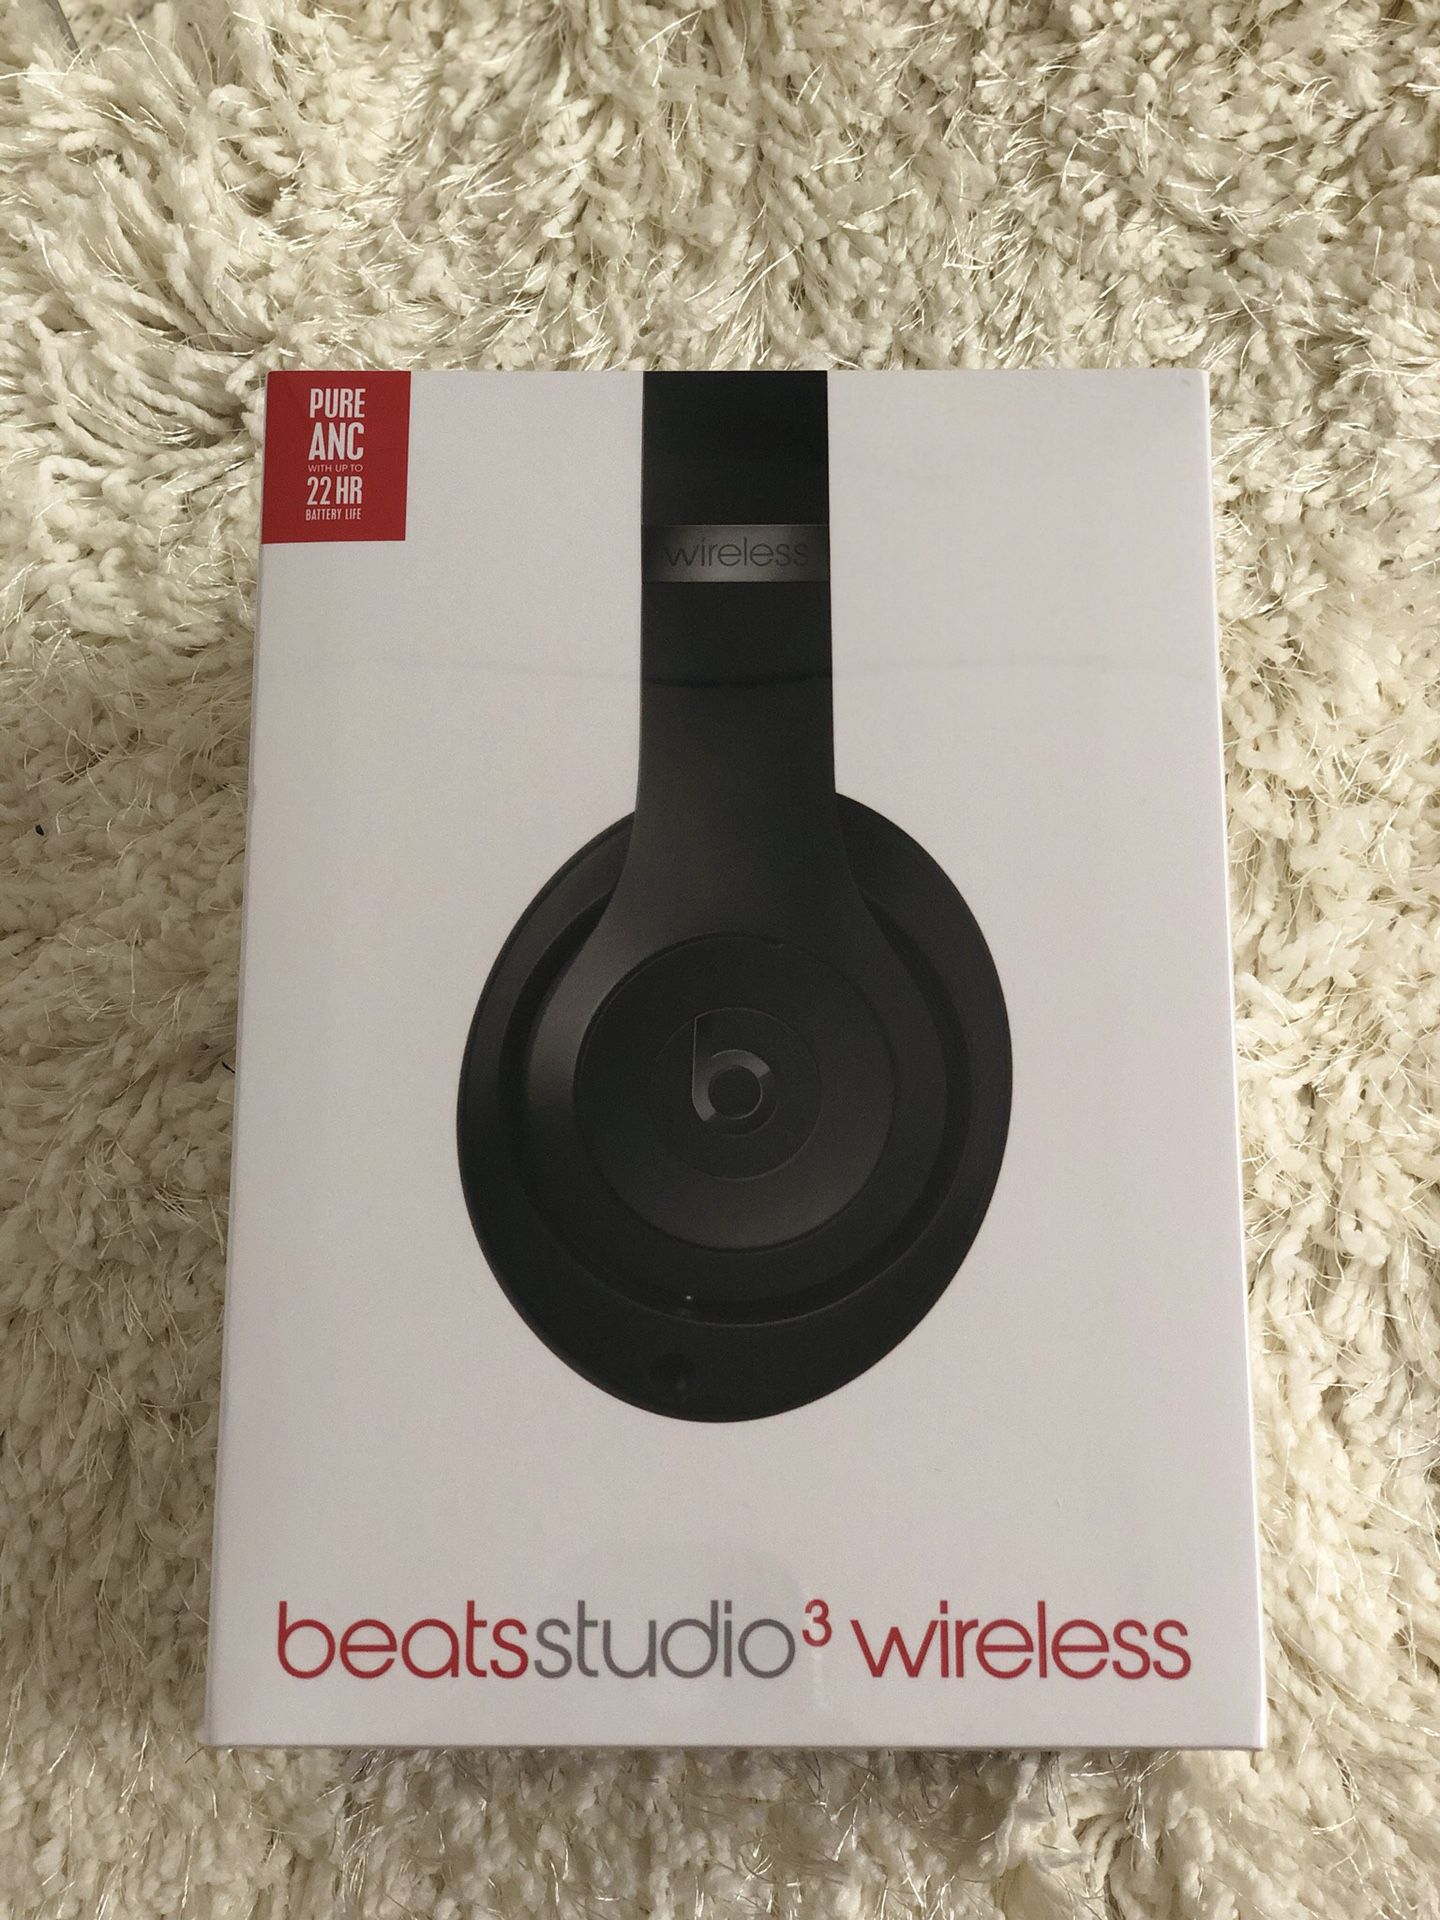 Beats studio 3 wireless - unopened box